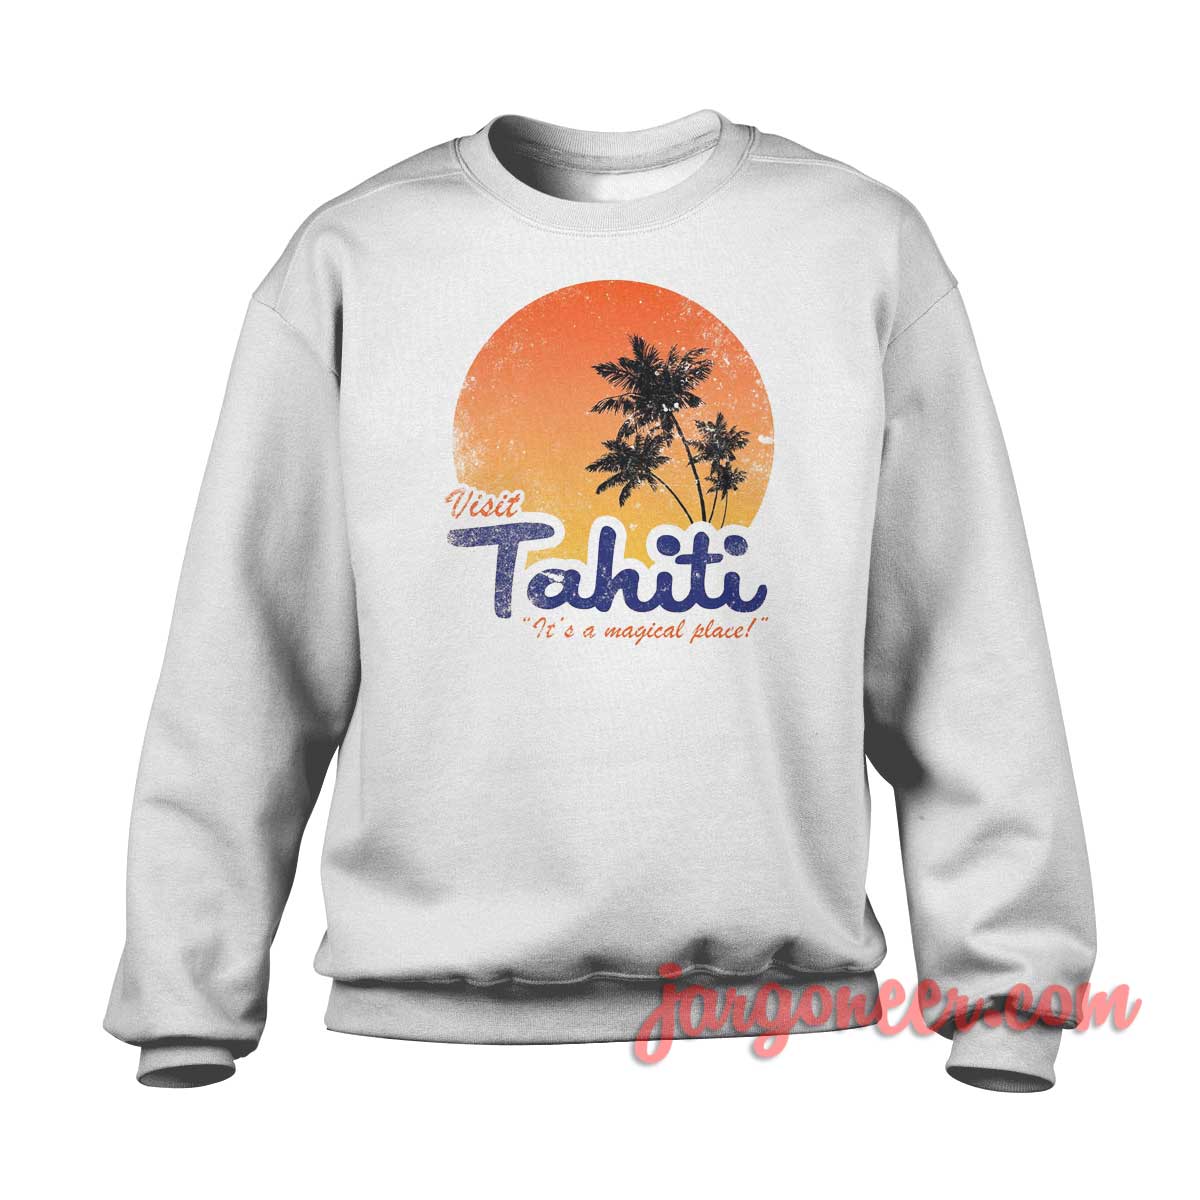 Visit Tahiti Magical Place 1 - Shop Unique Graphic Cool Shirt Designs